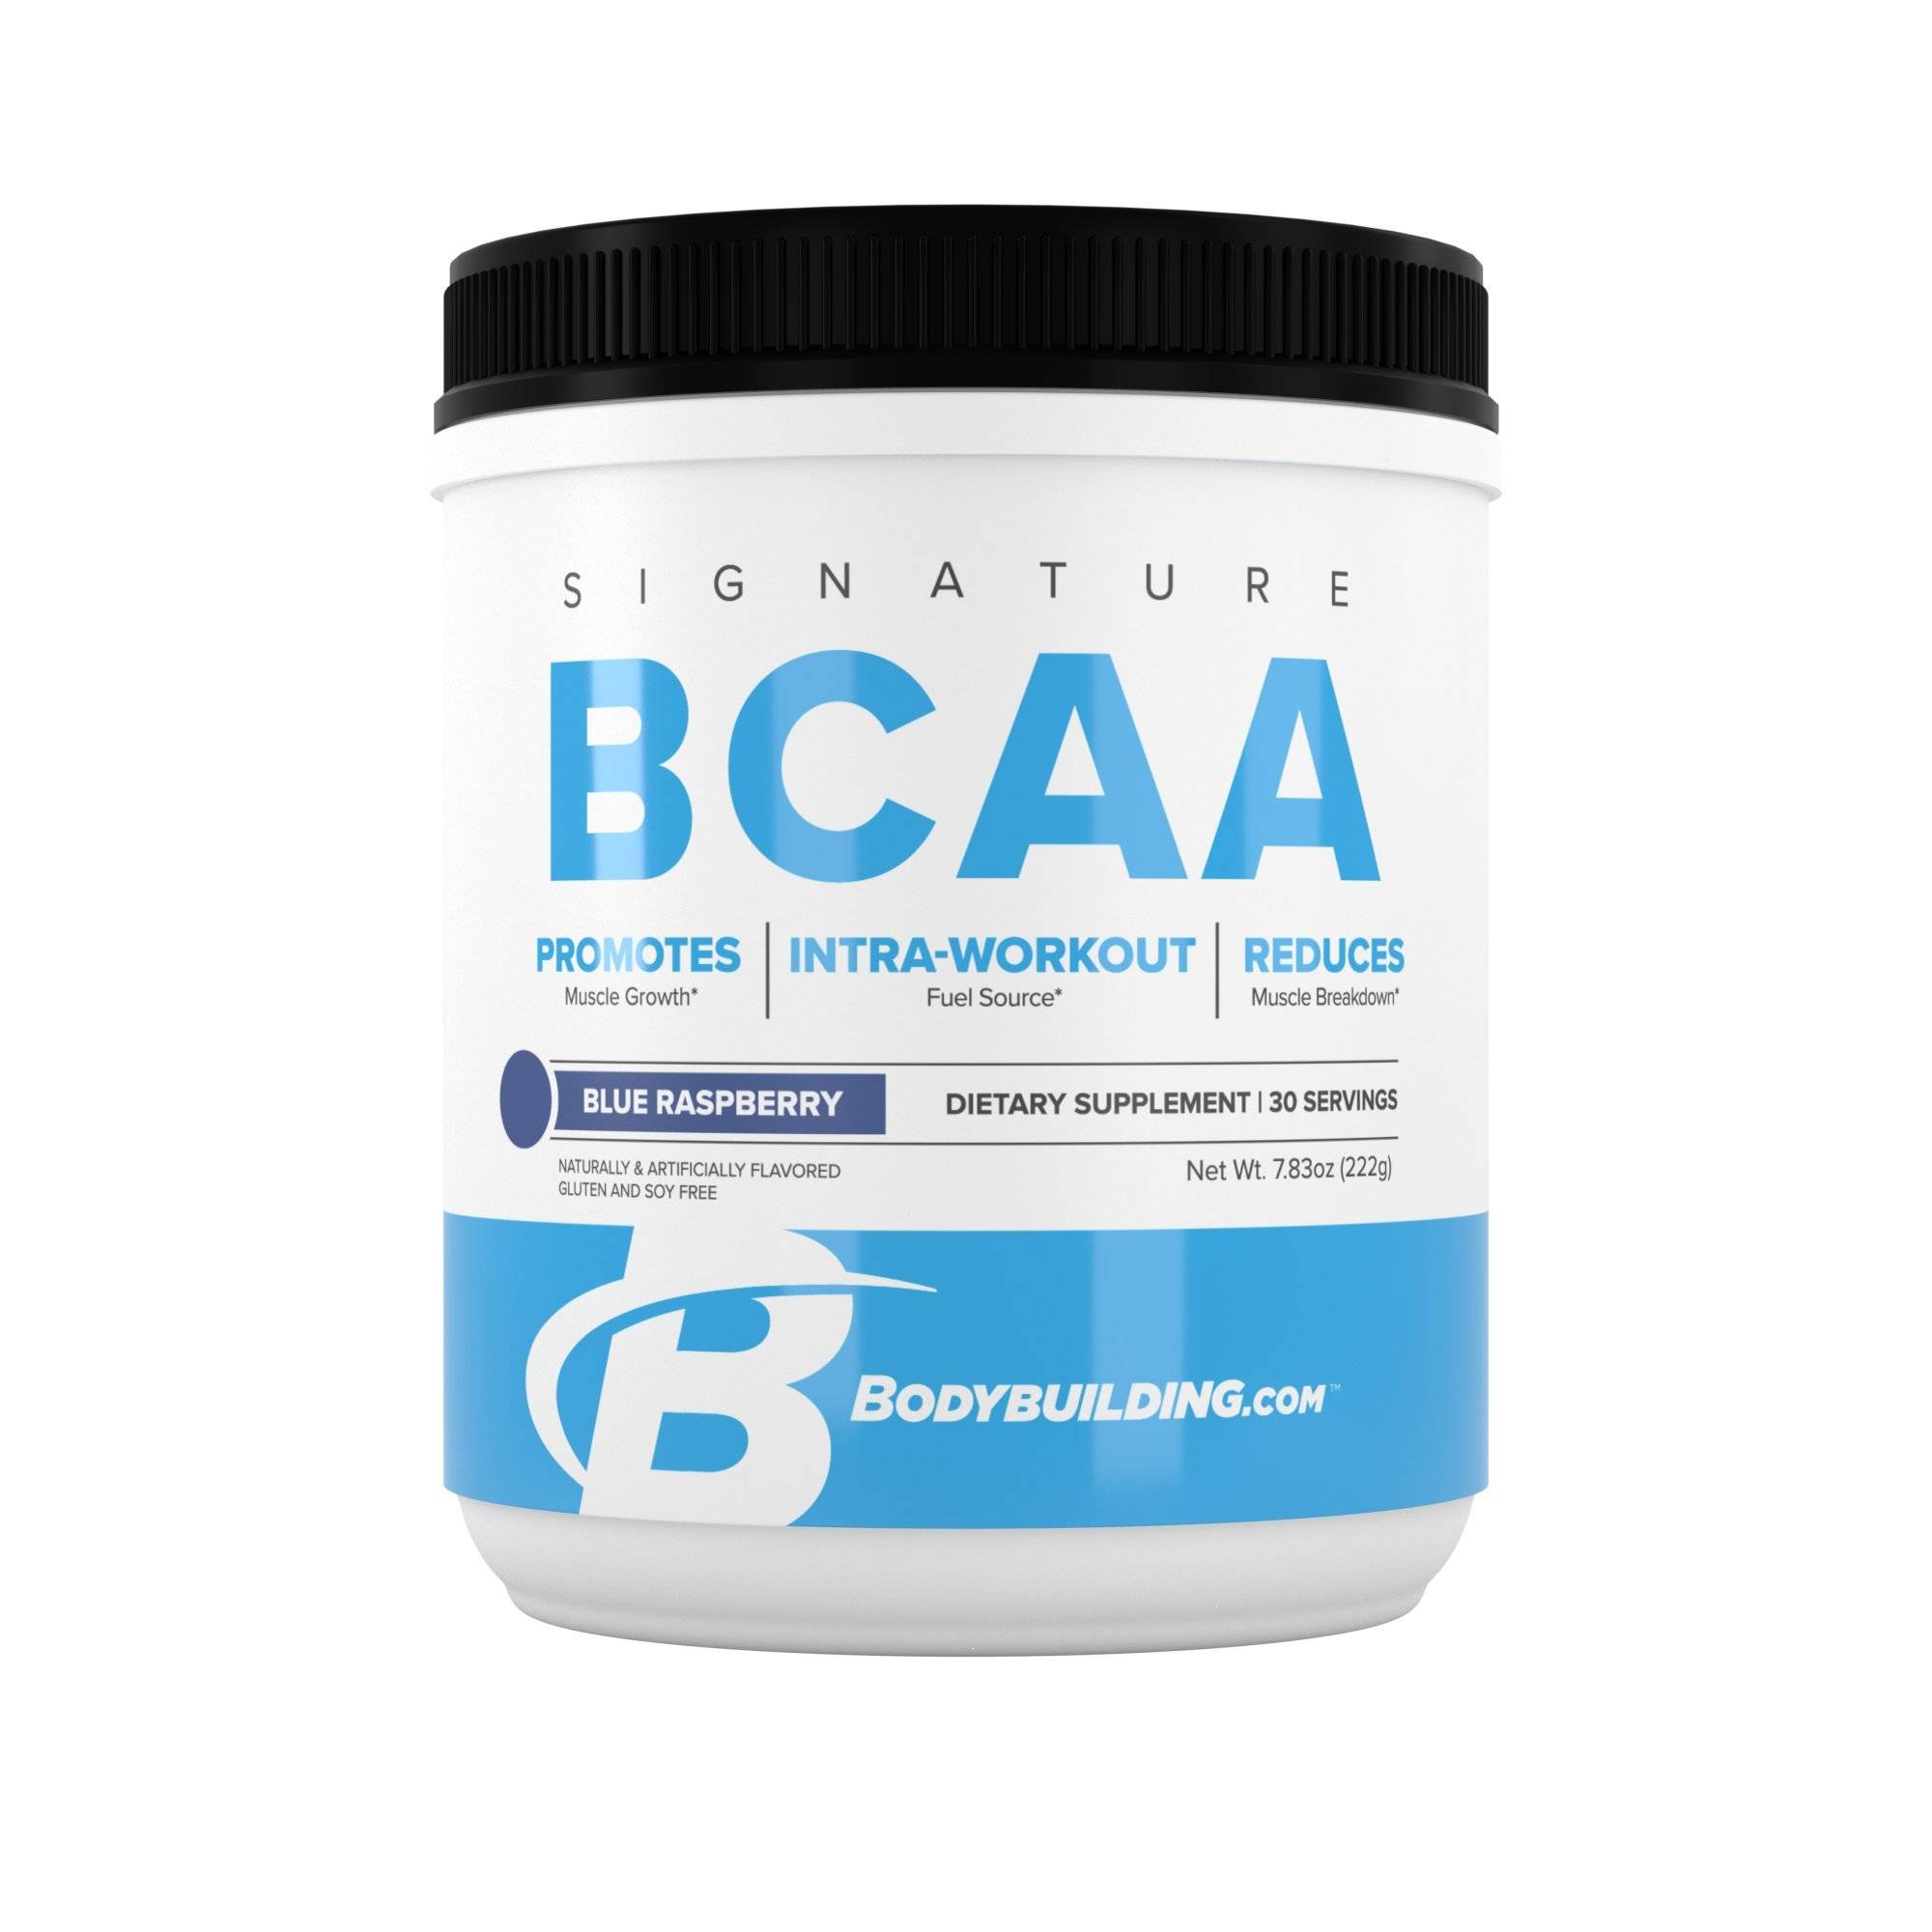 Аминокислоты bcaa (бцаа) как принимать и какой эффект от использования